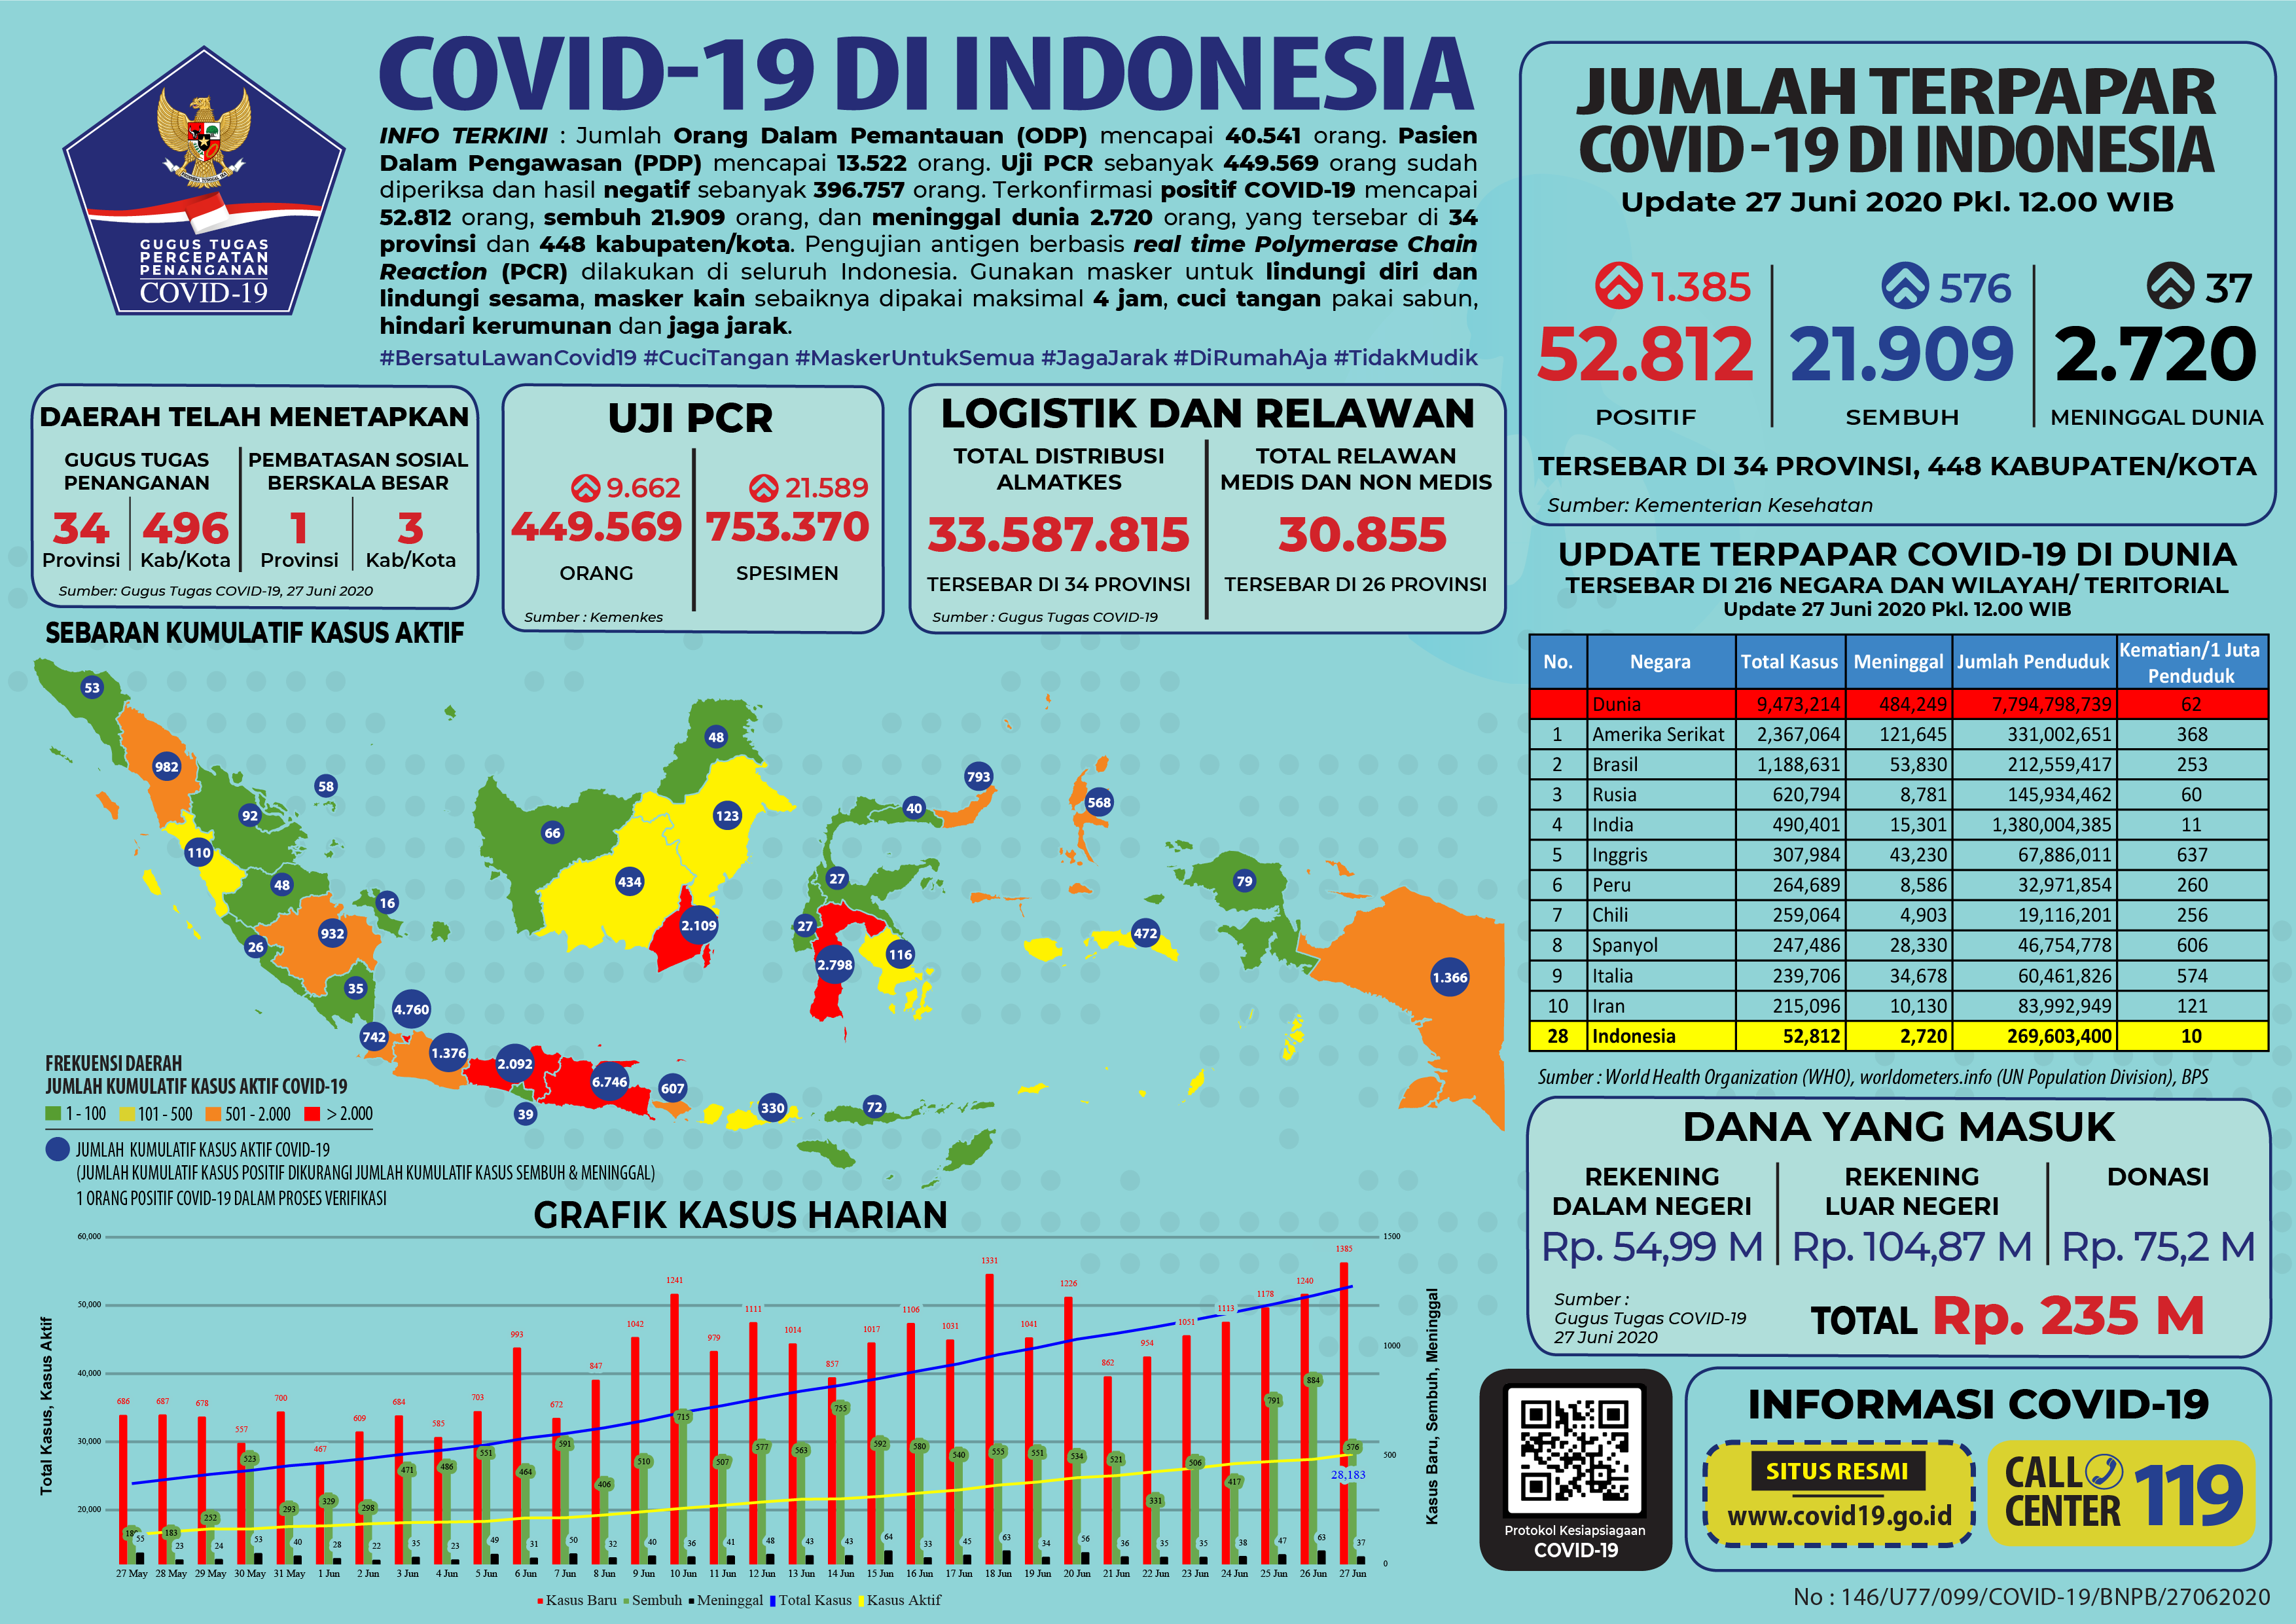 Update Covid-19 di Indonesia hingga Sabtu 27 Juni 2020.*